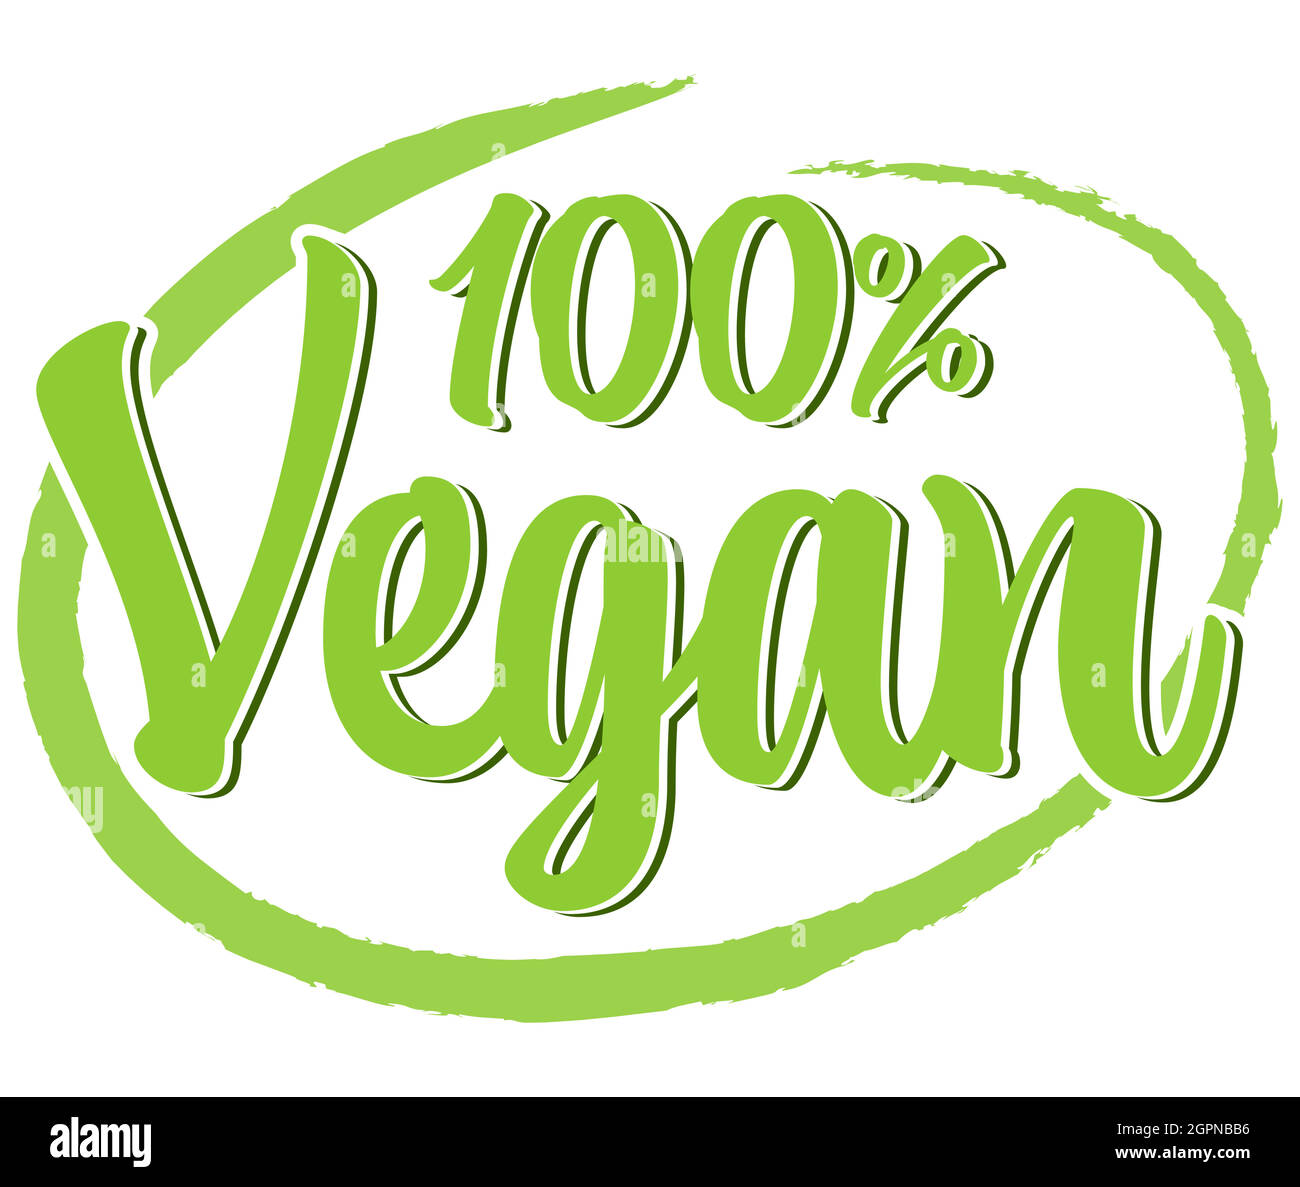 moderno francobollo verde 100% vegano Illustrazione Vettoriale